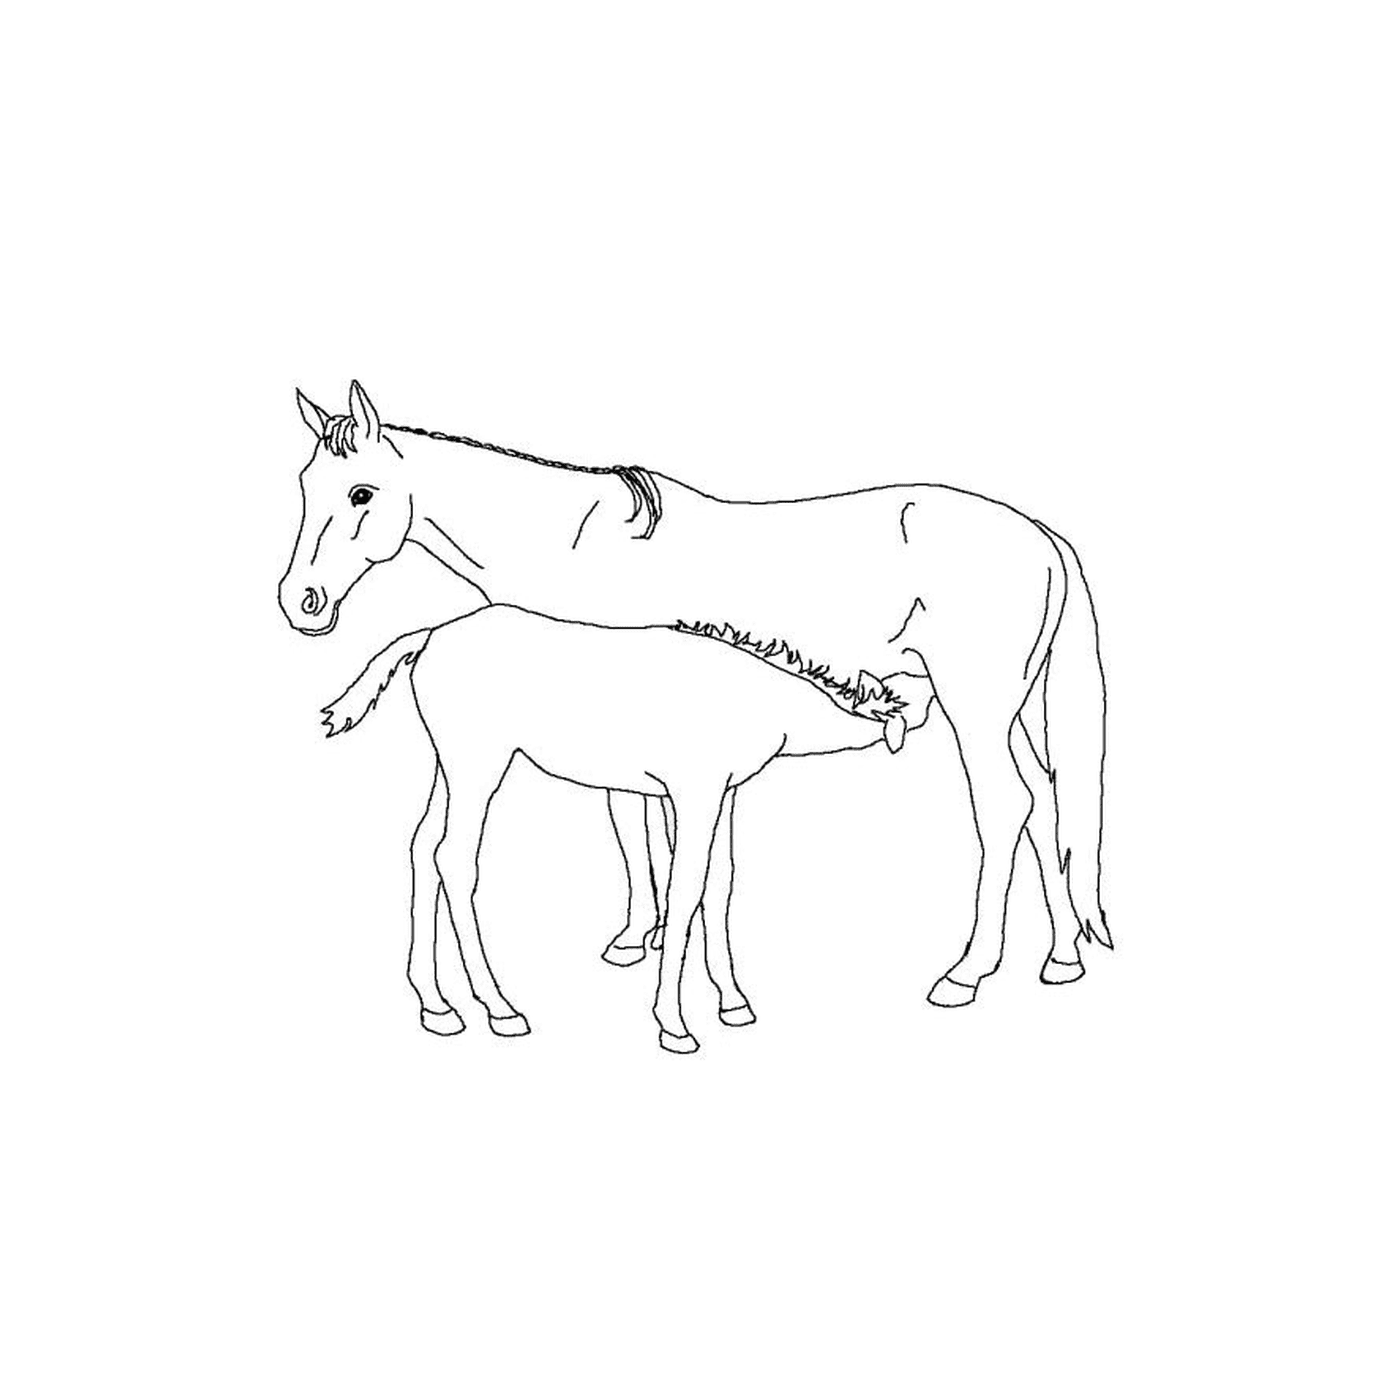   Chevaux poulain - Un cheval et un poulain côte à côte 